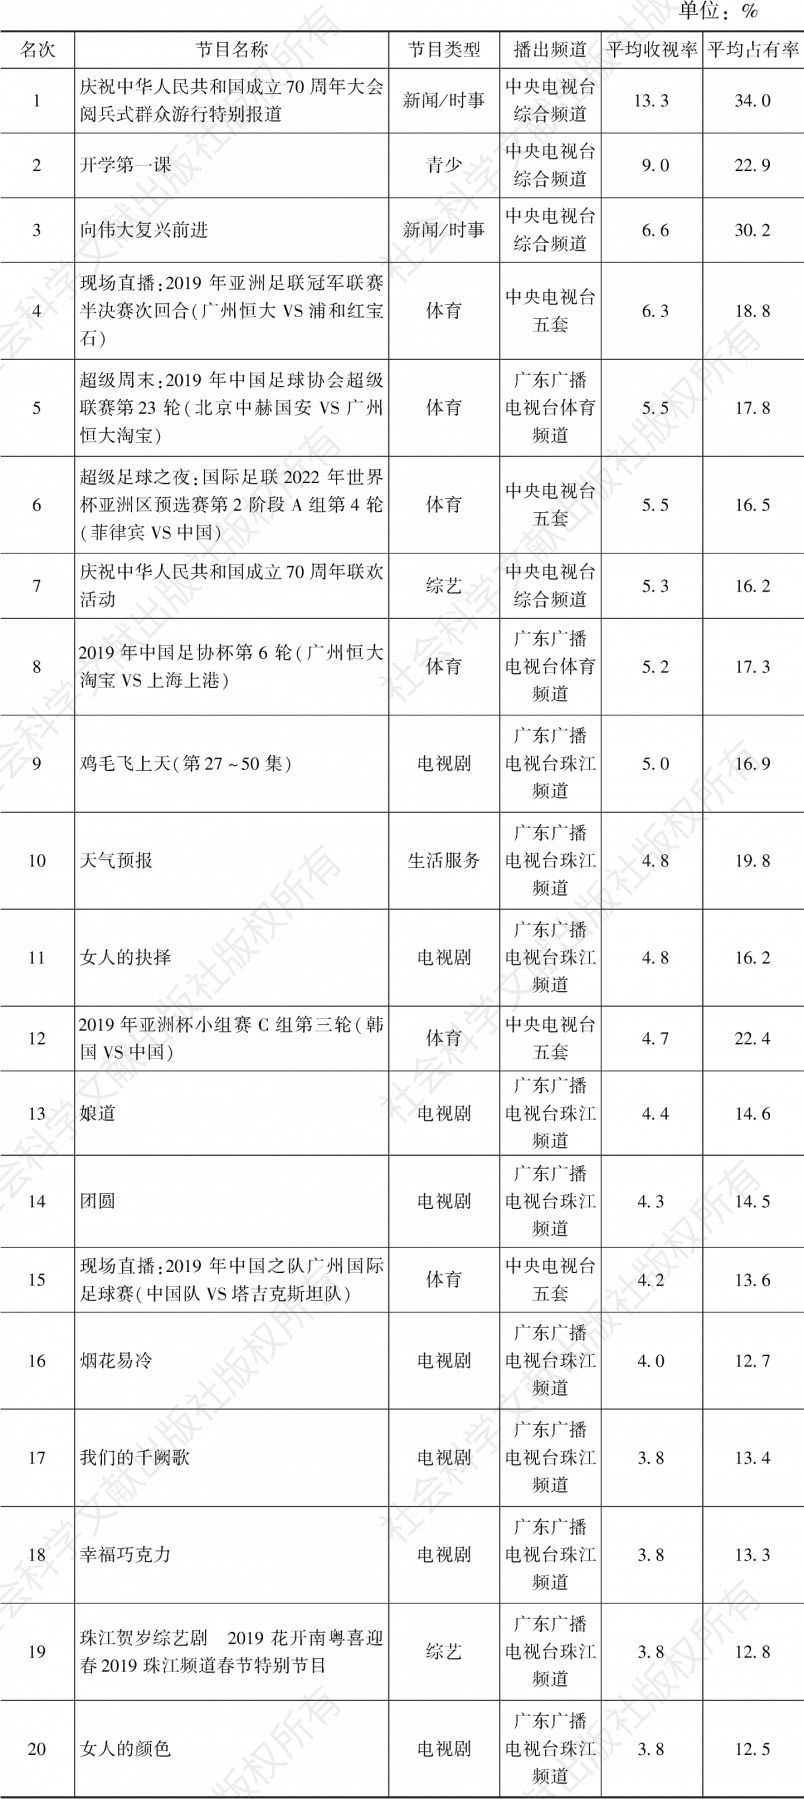 2019年广州市场所有节目收视率TOP20